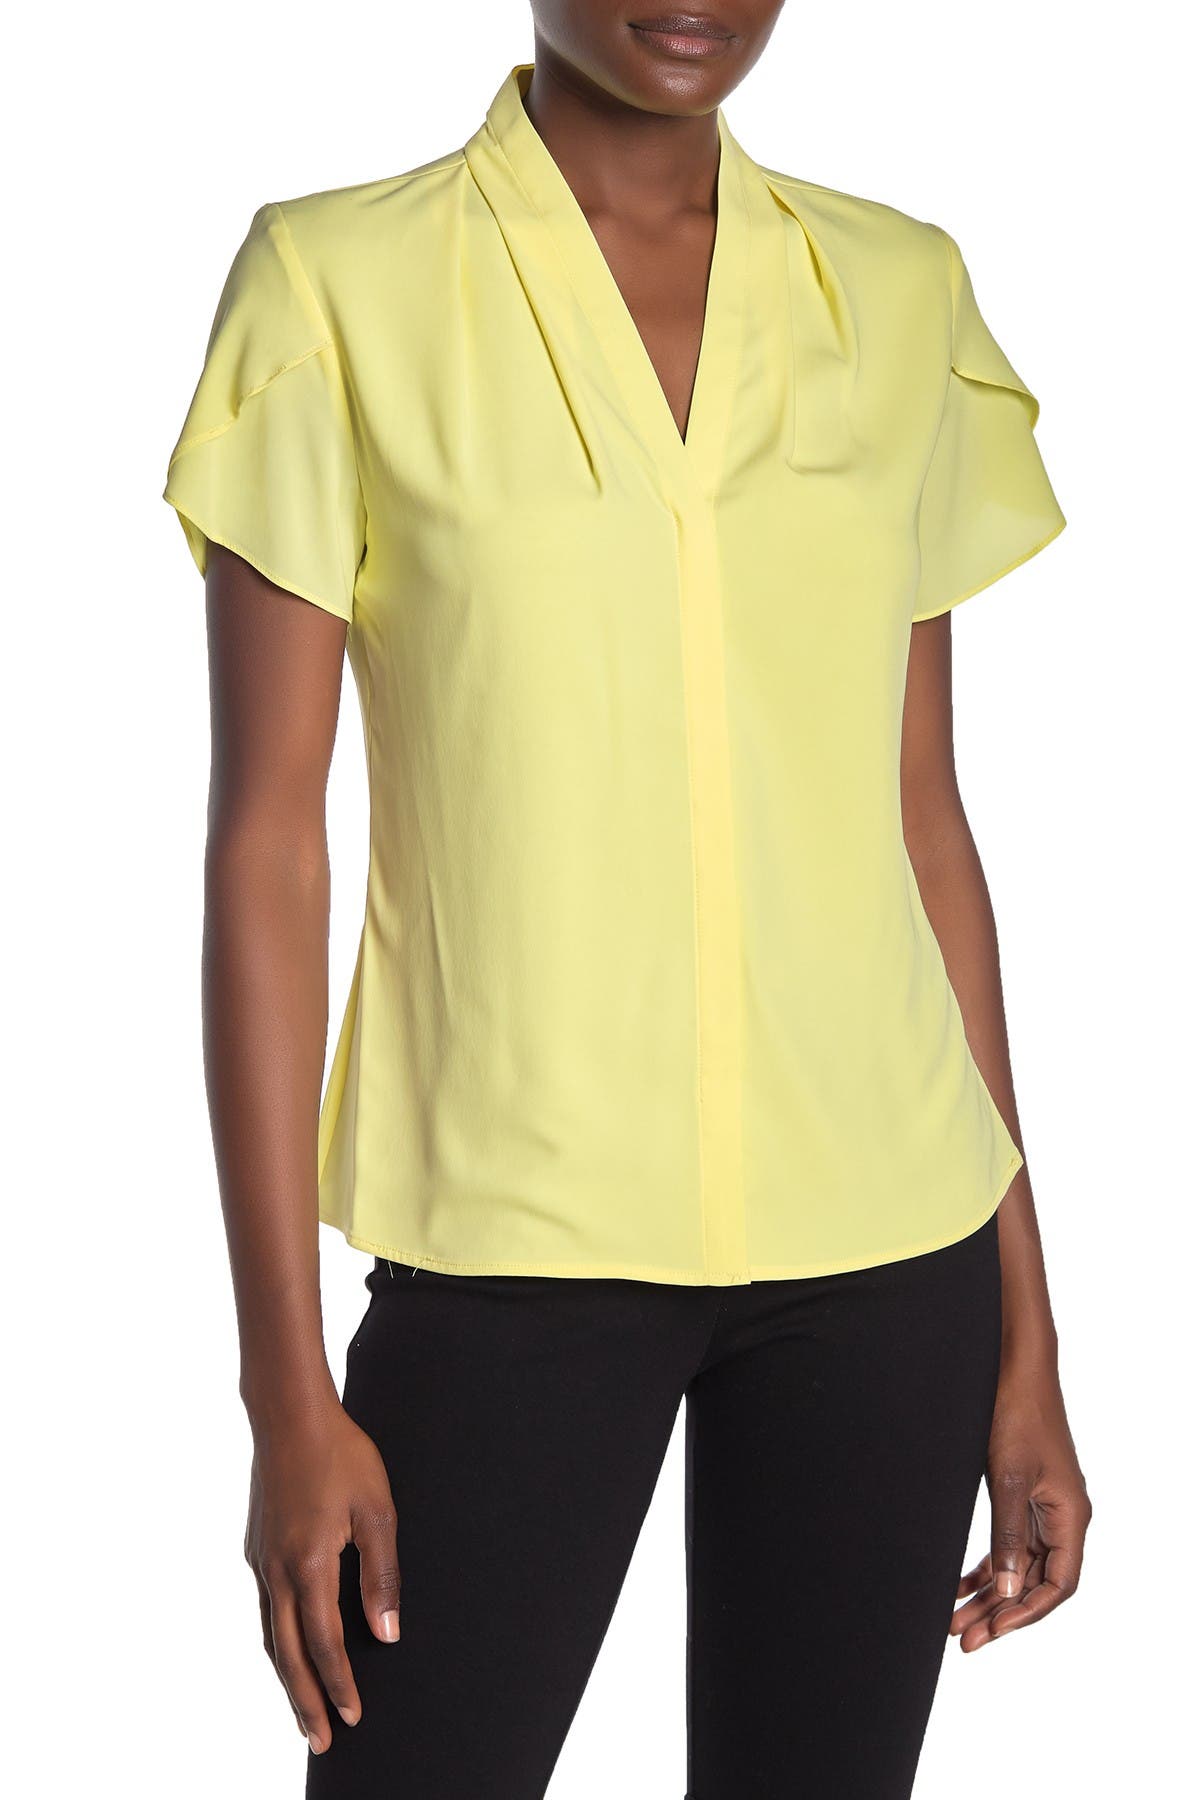 calvin klein yellow blouse